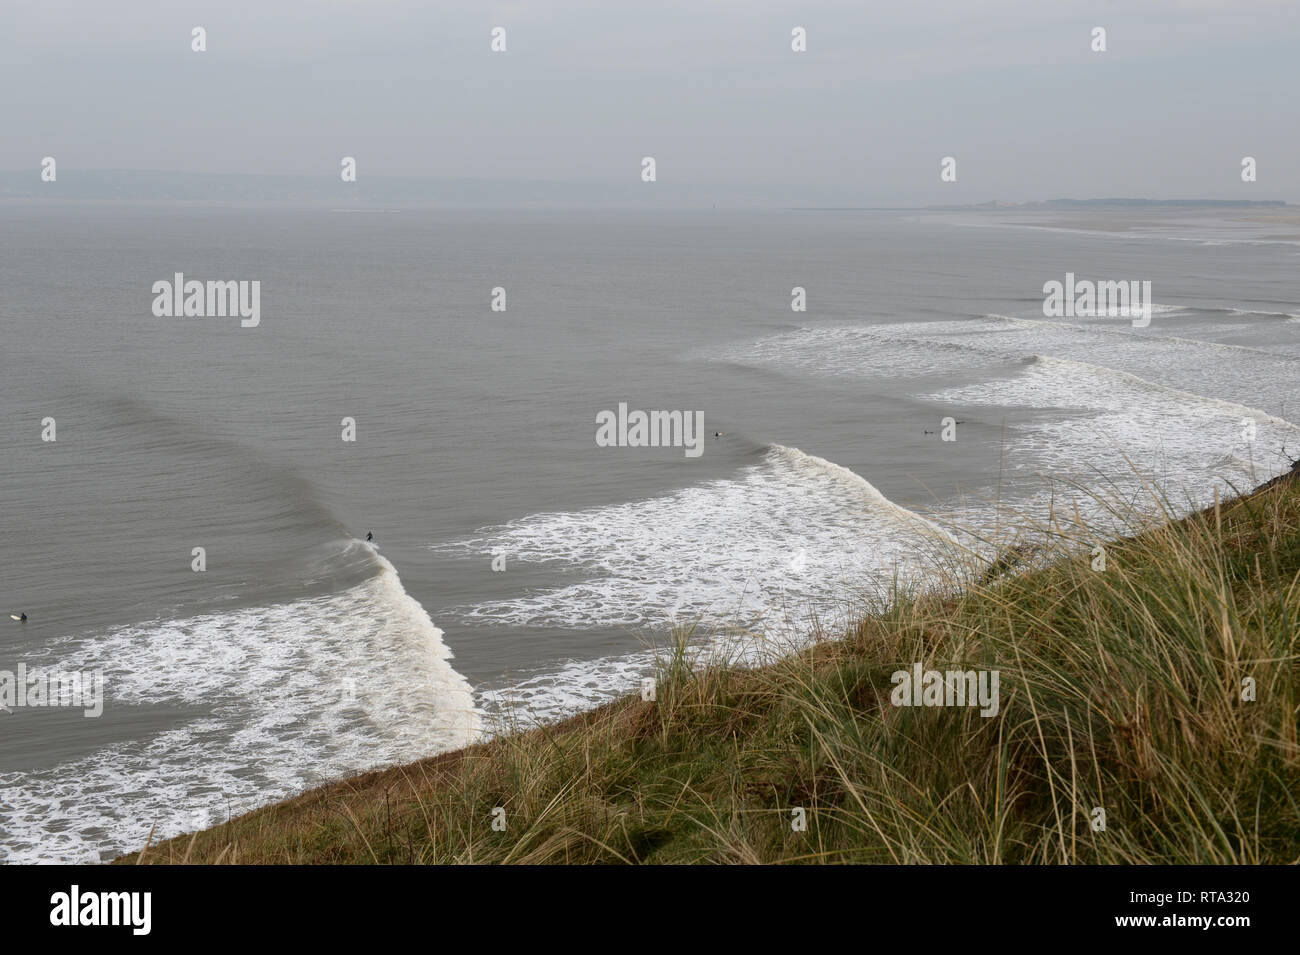 Surfen am Broughton, wo lange Wellen entlang der wilden Küste an einem stürmischen Tag bilden die perfekte Point Break für begeisterte Surfer Pause Stockfoto